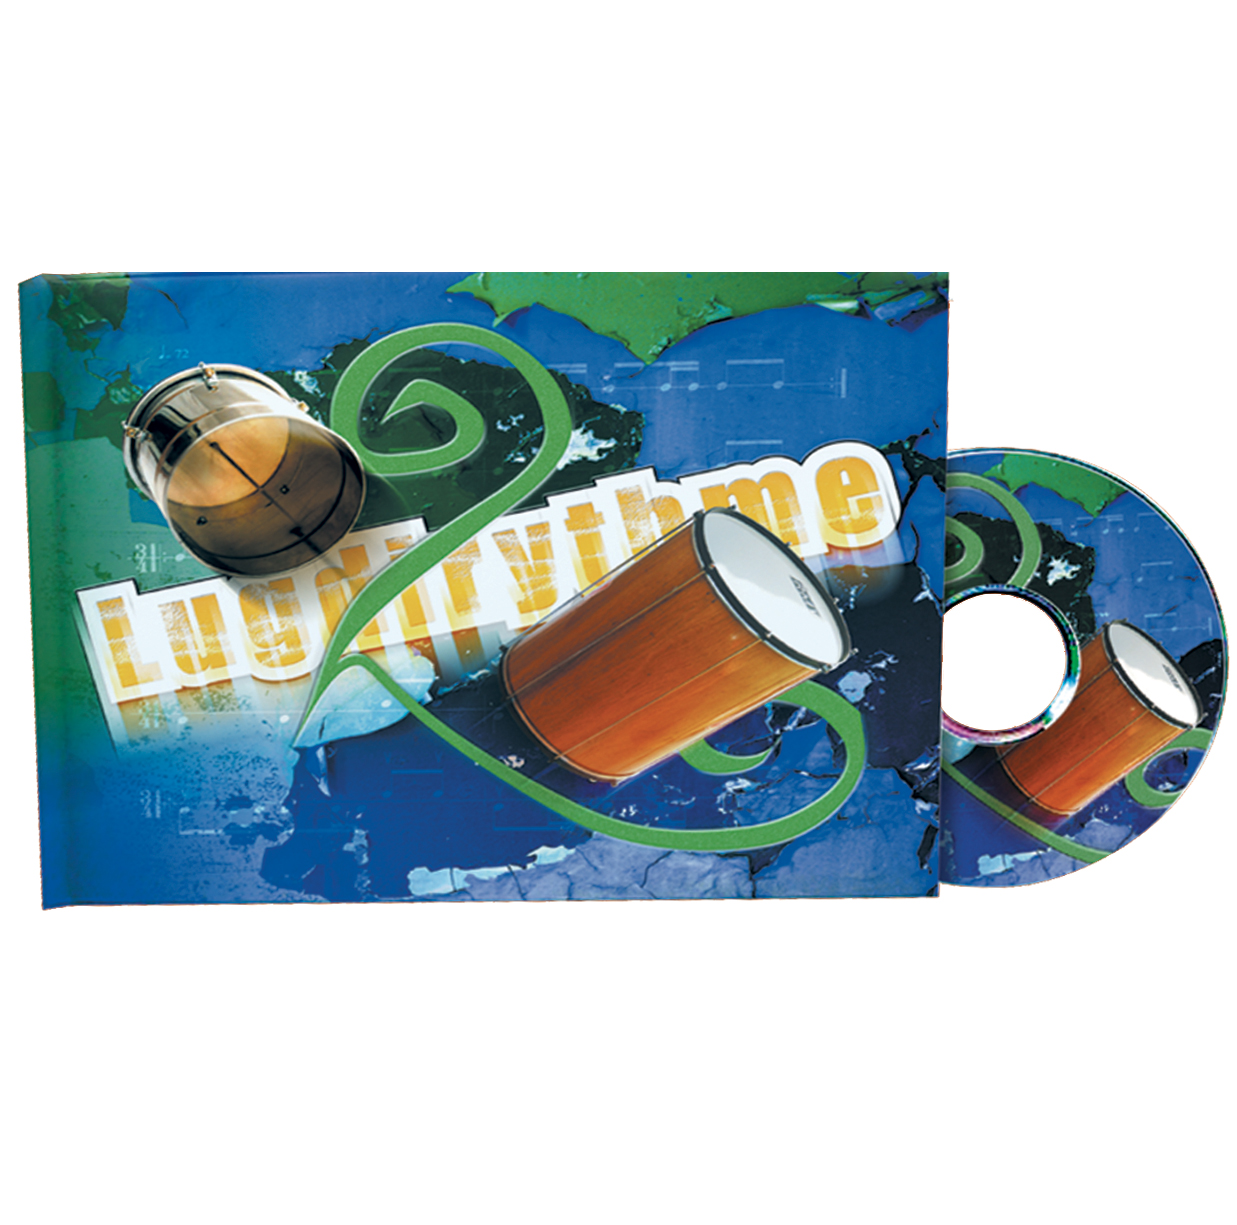 Lugdirythme 4 - Livre + CD